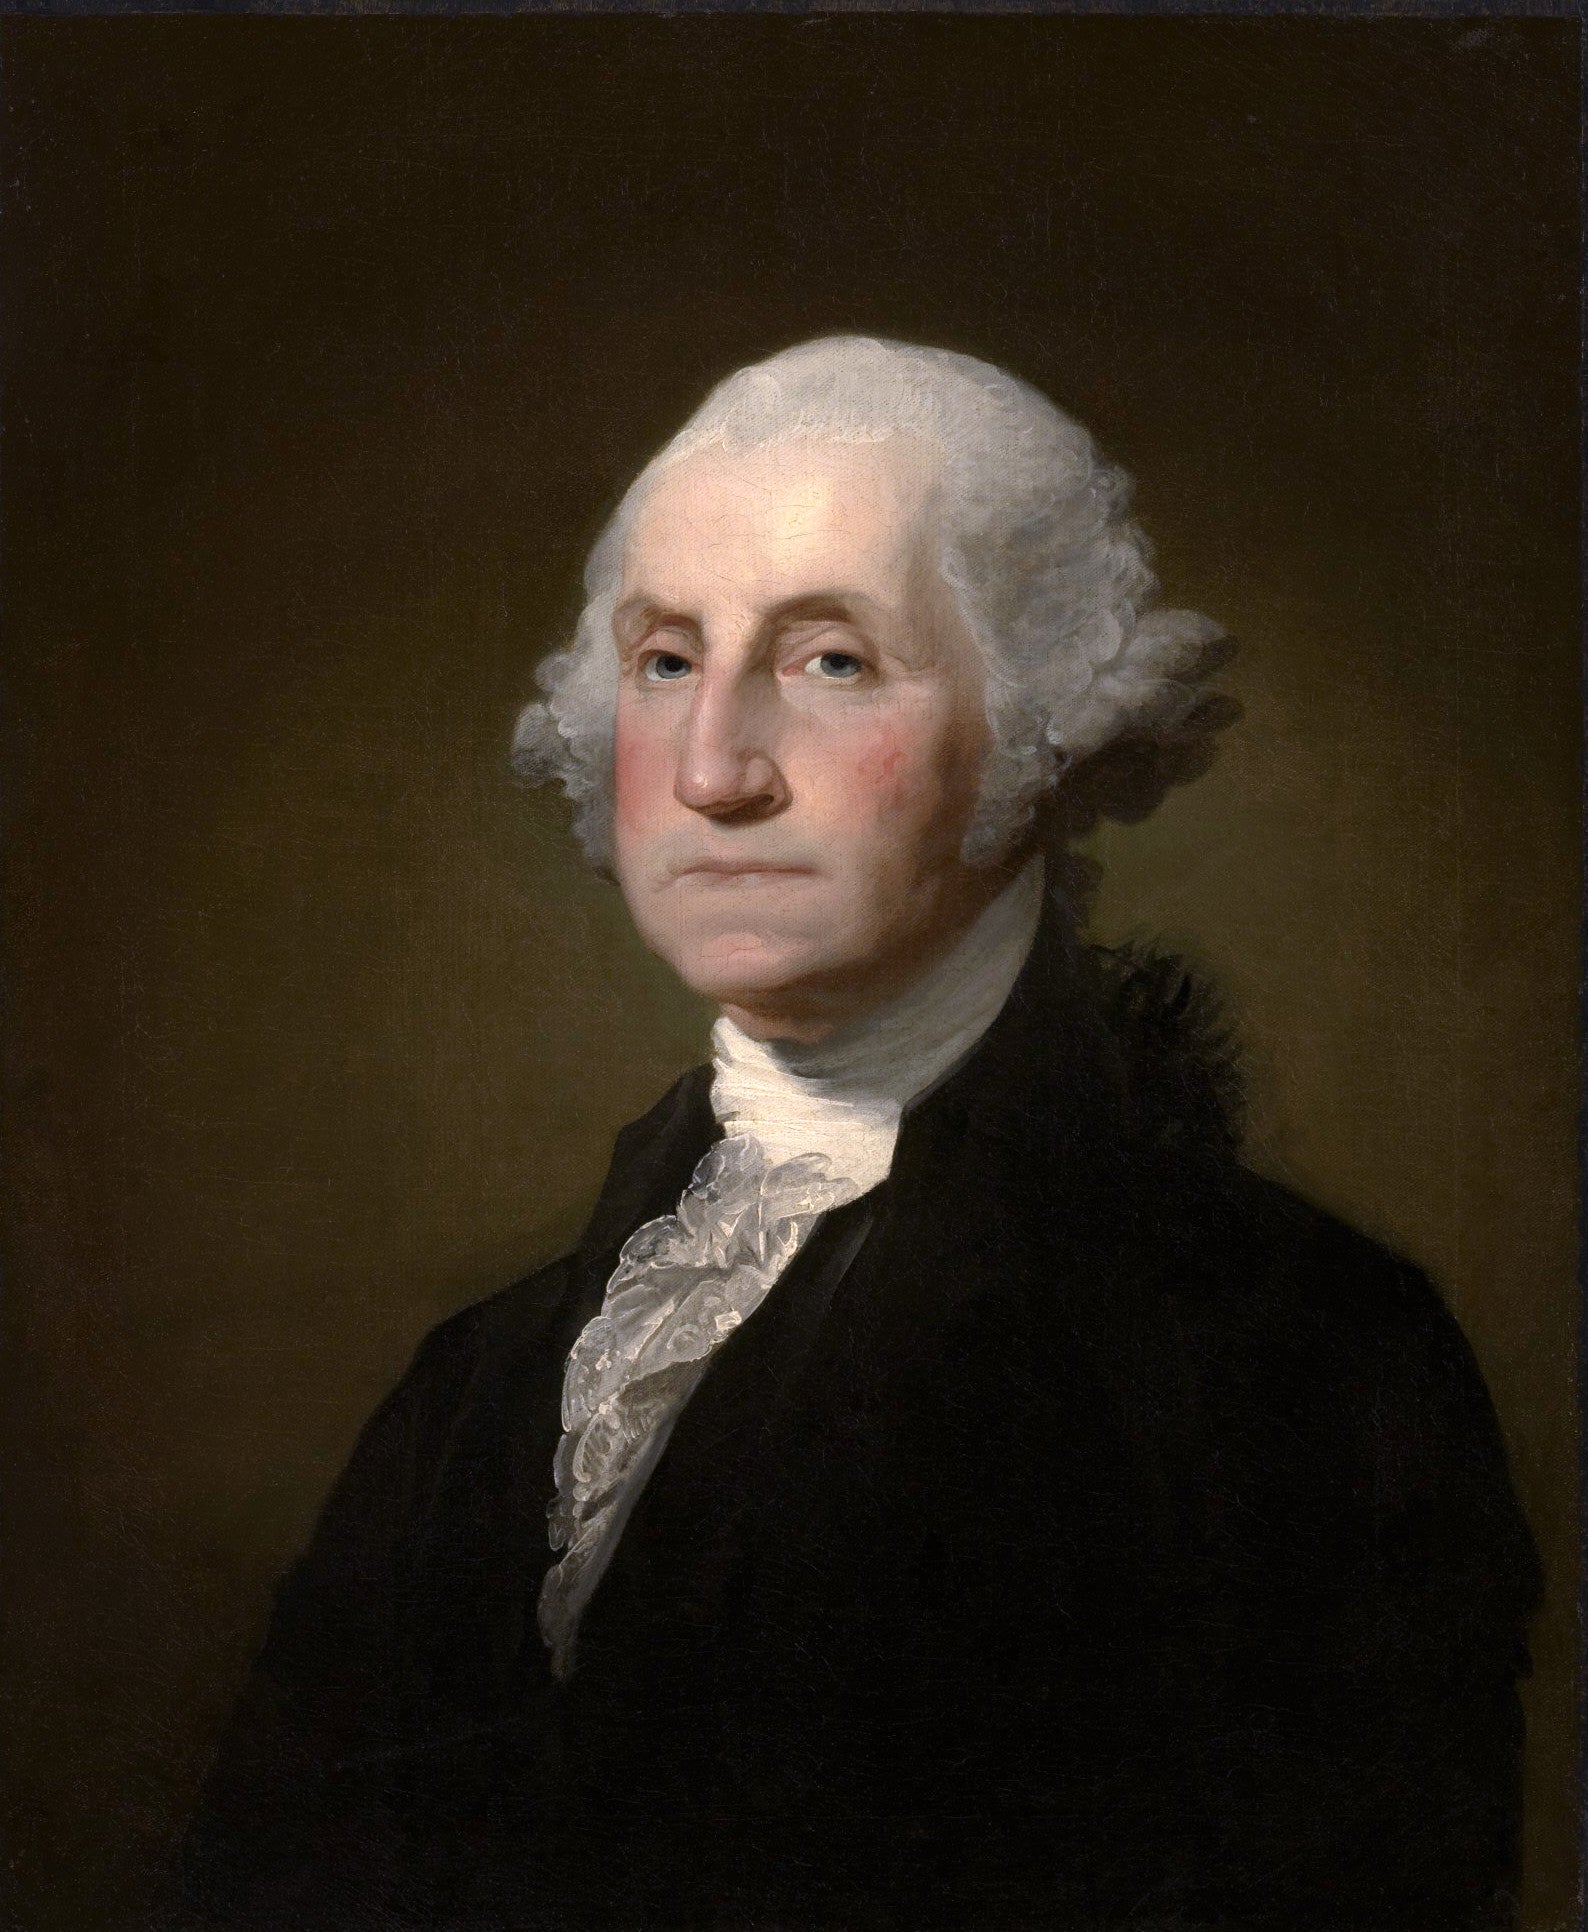 Photo of George Washington